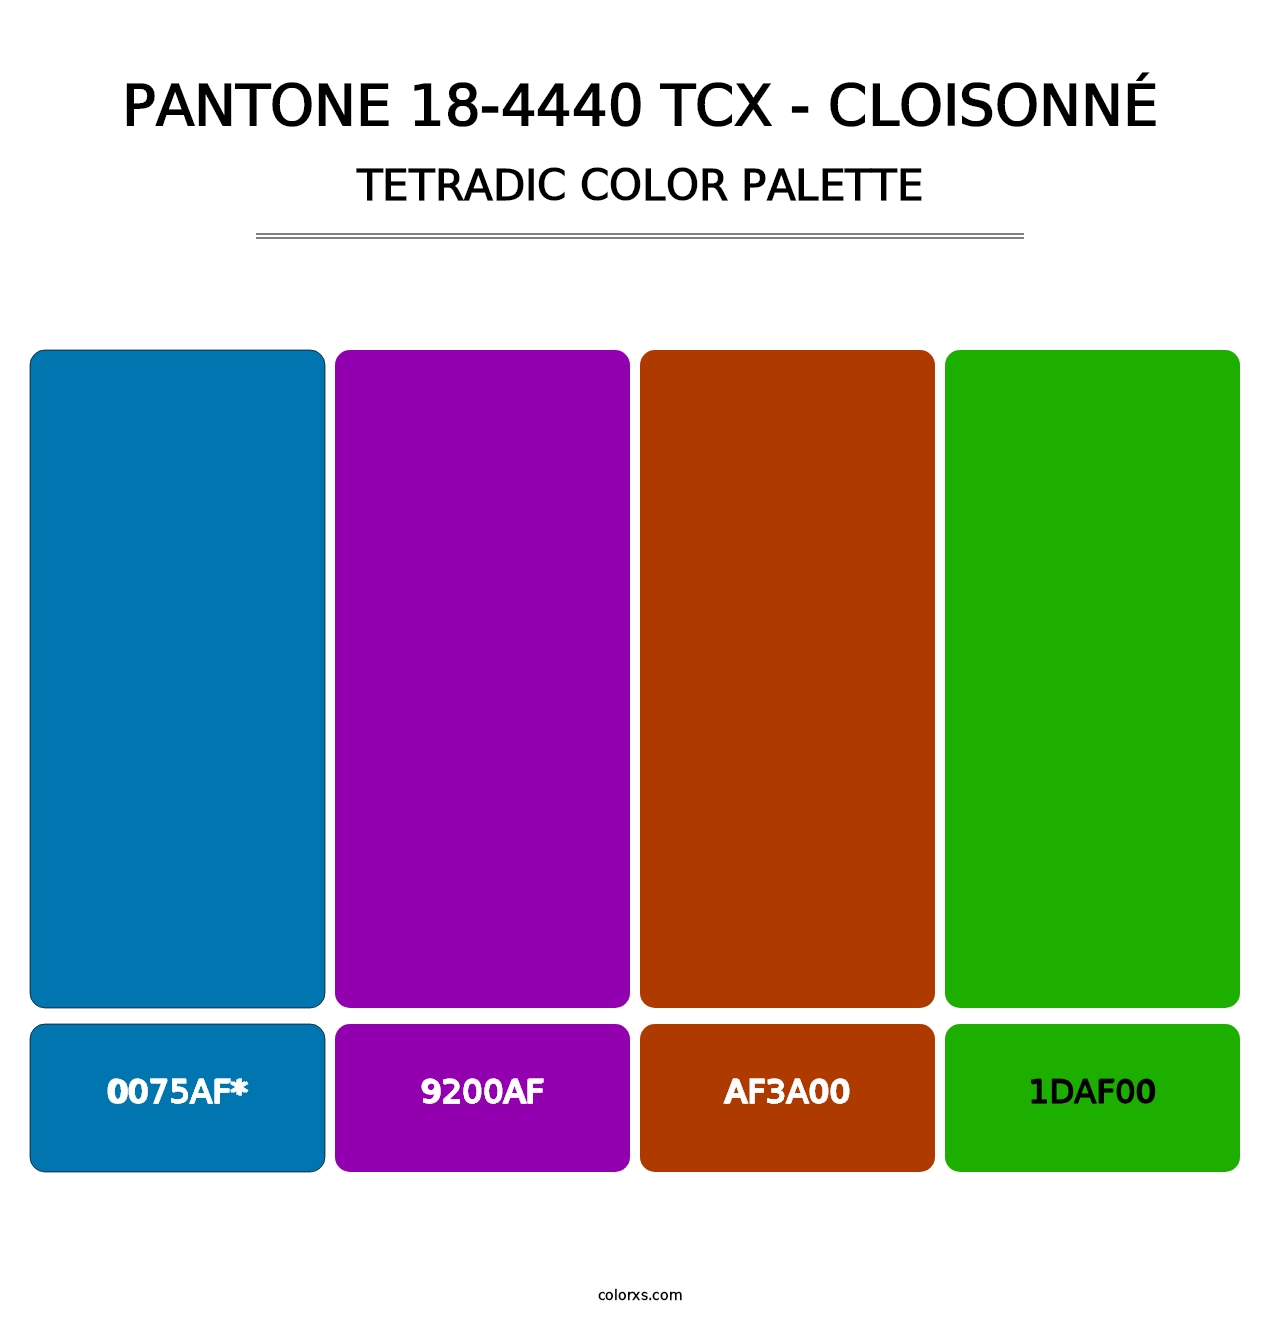 PANTONE 18-4440 TCX - Cloisonné - Tetradic Color Palette